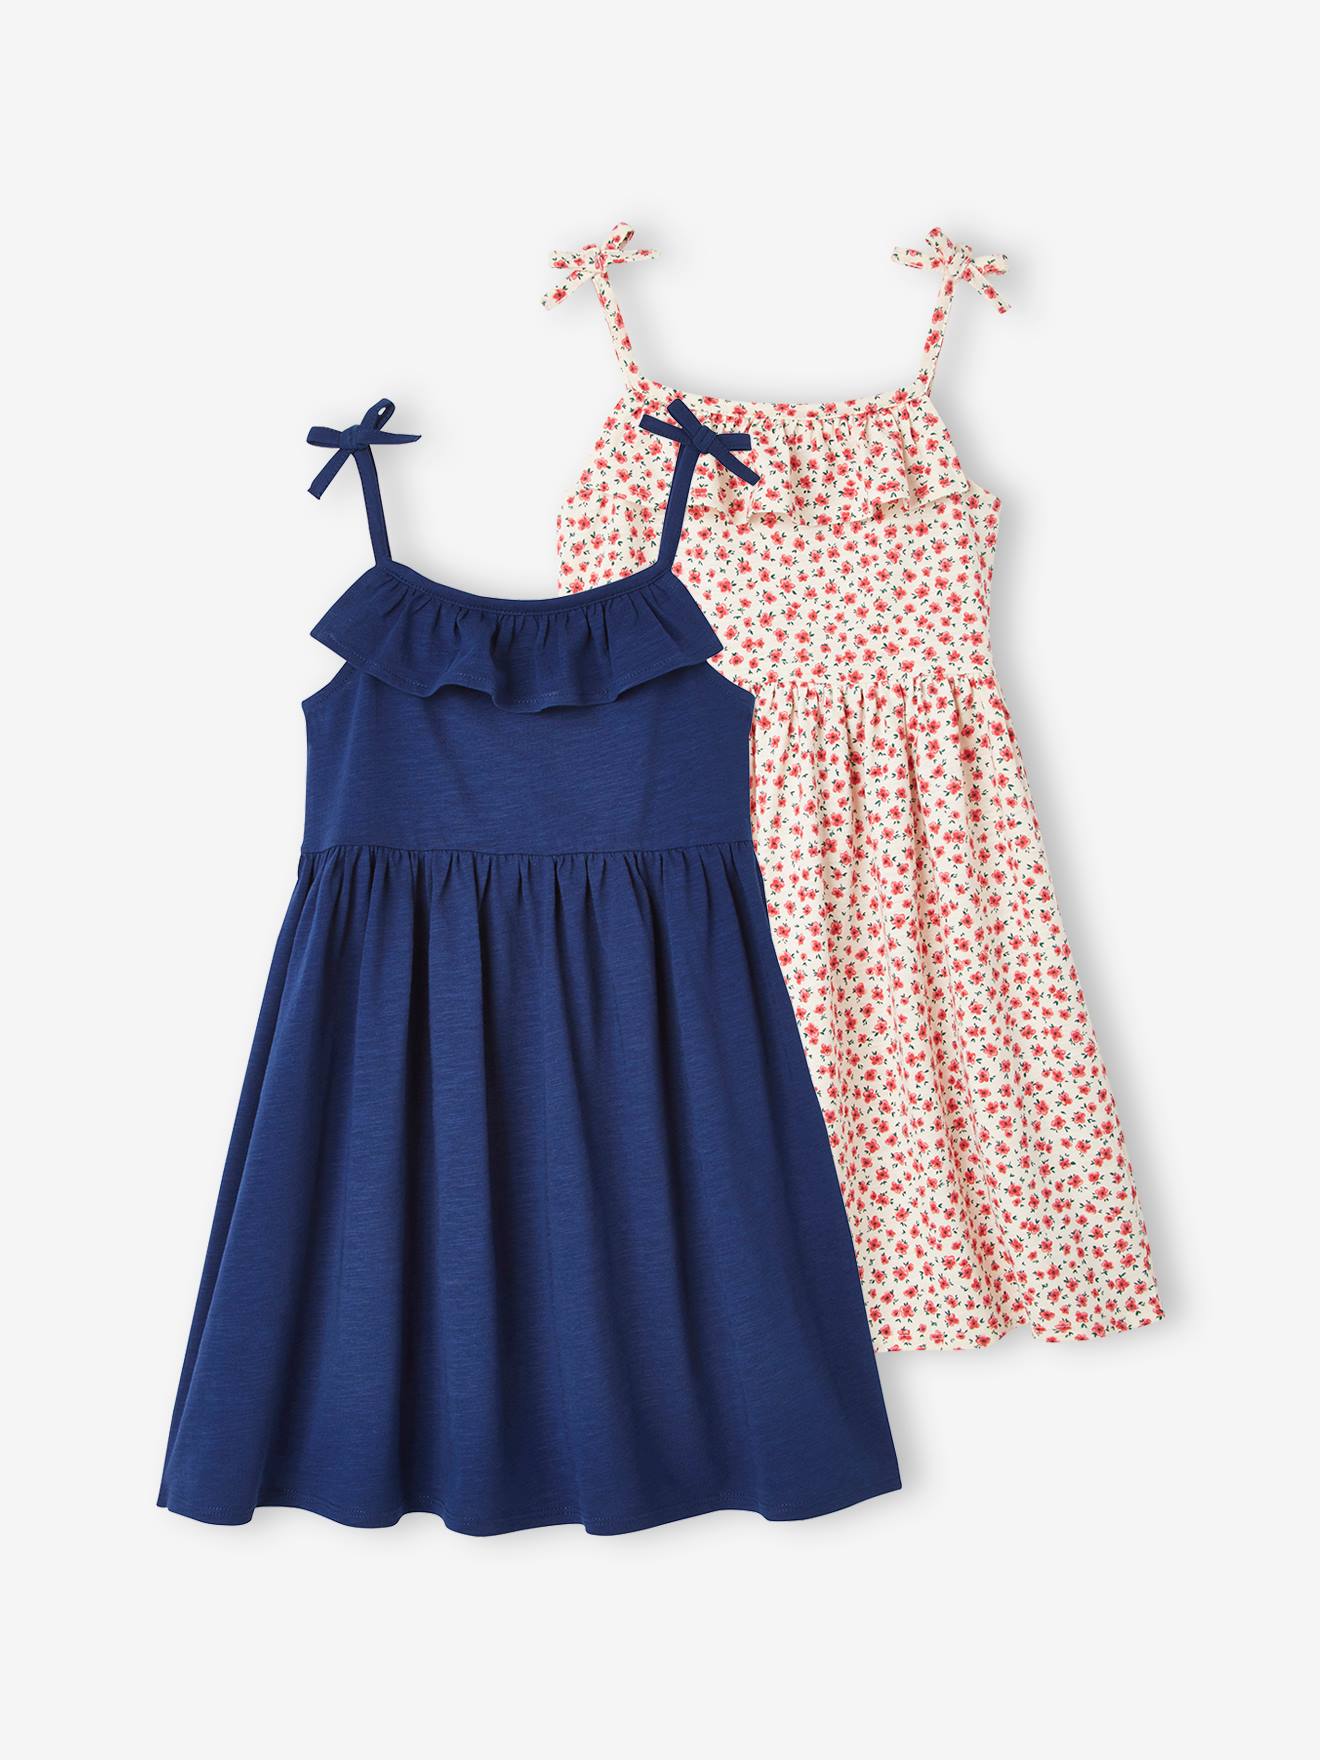 VERTBAUDET Pack de 2 vestidos de tirantes 1 estampado + 1 liso, para niña azul medio bicolor/multicolor